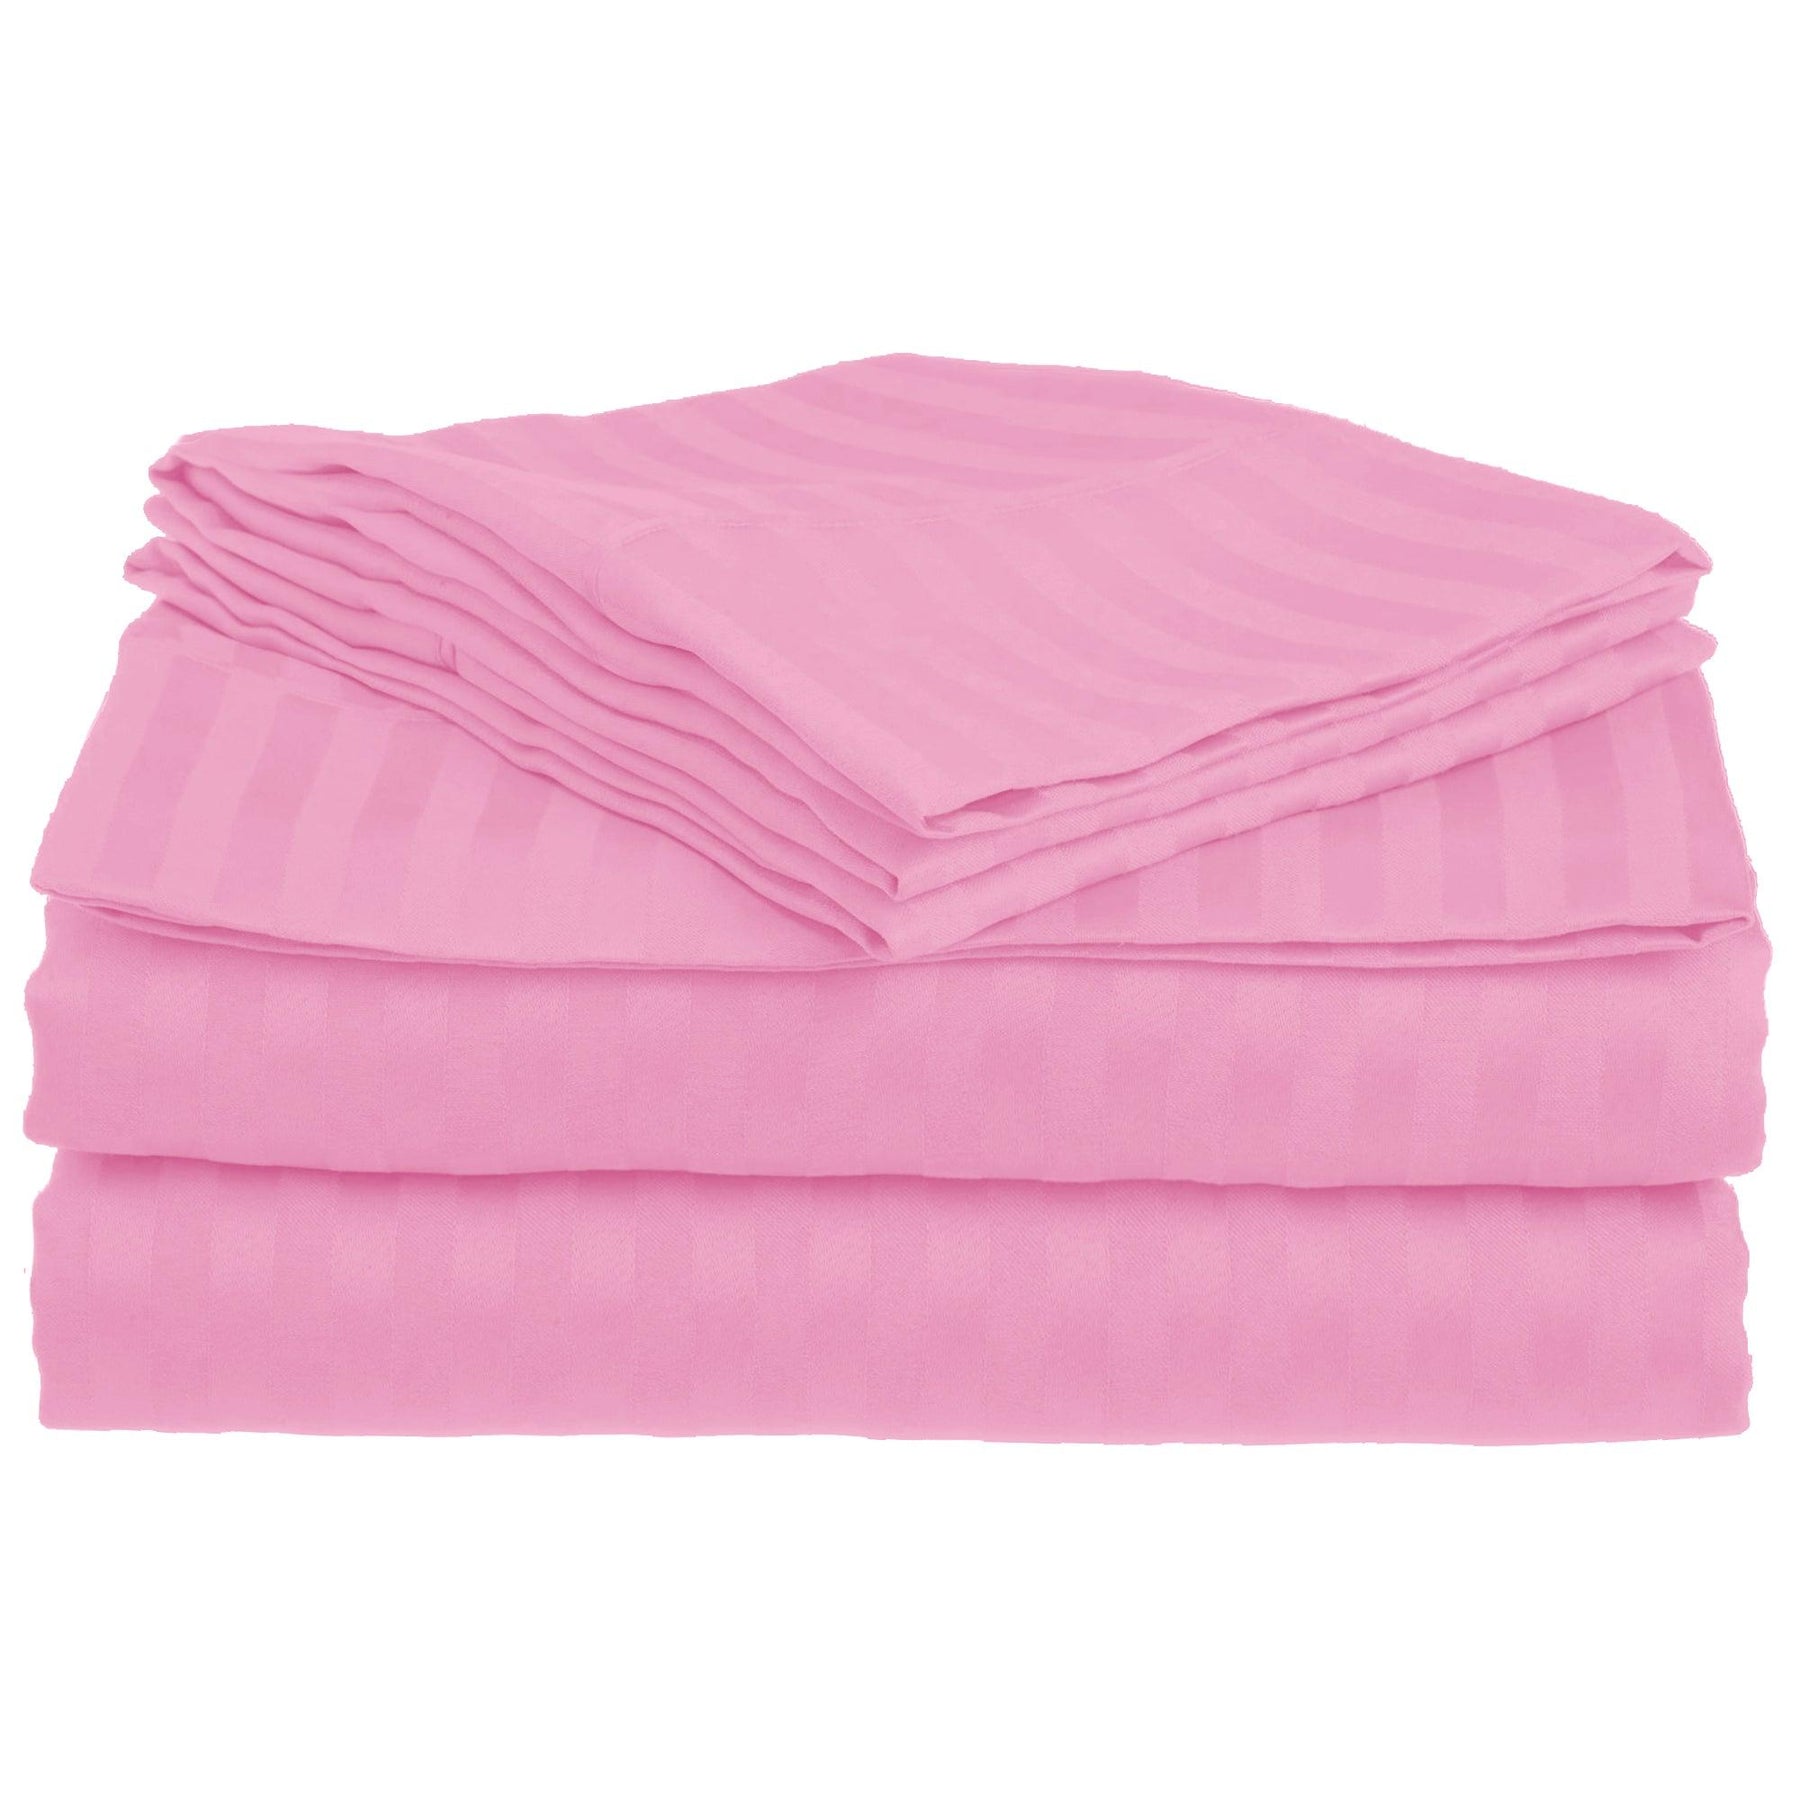 Superior Microfiber Wrinkle Resistant and Breathable Stripe Deep Pocket Bed Sheet Set - Pink